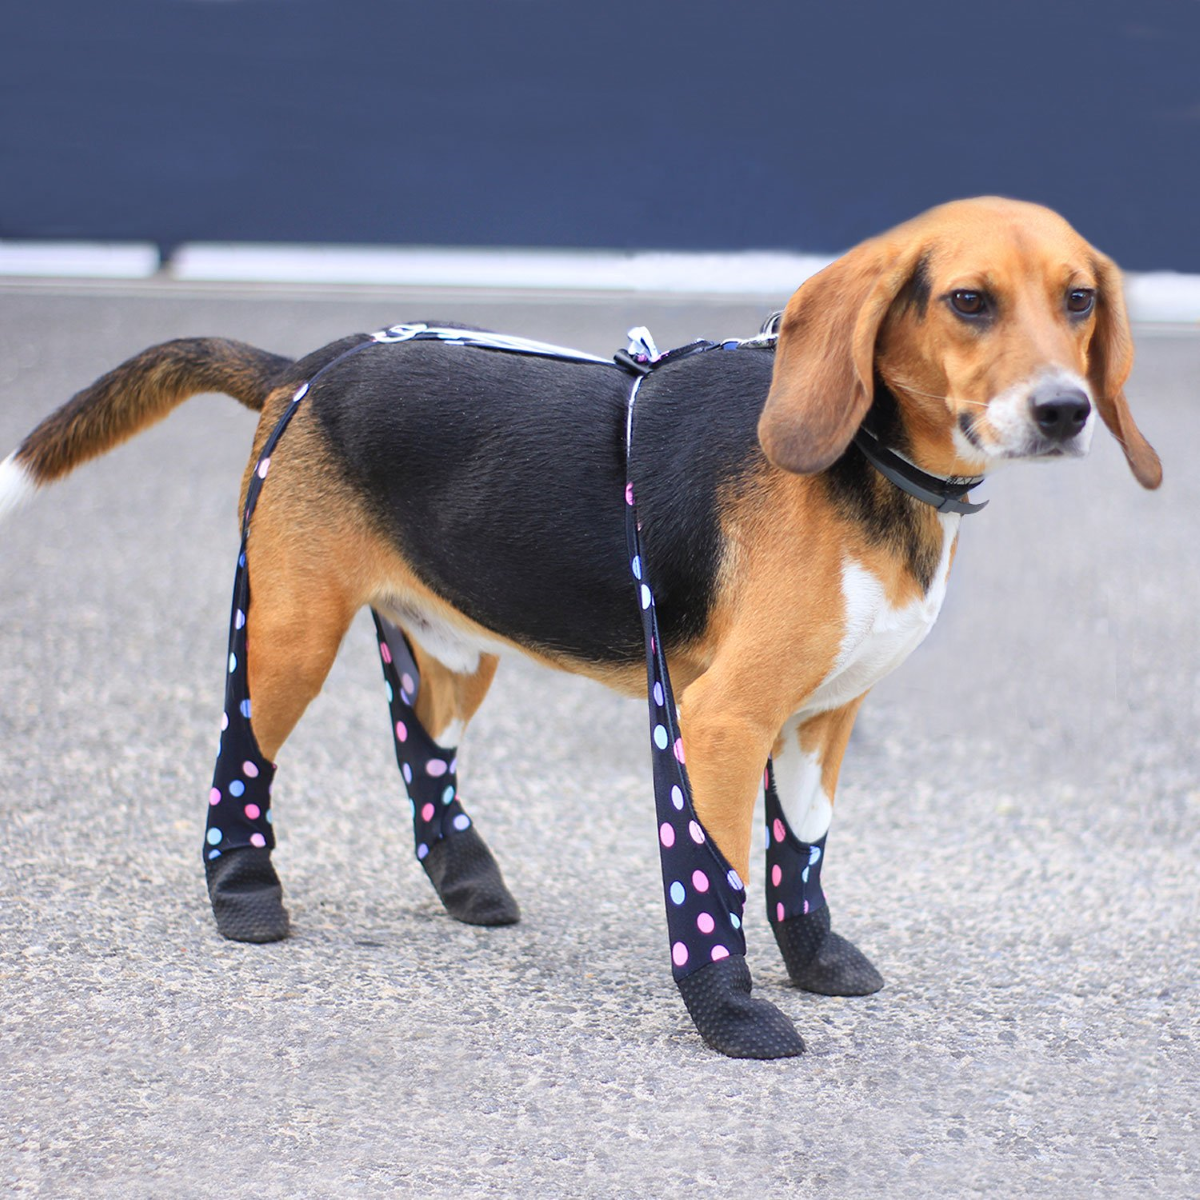 Walkee Paws Waterproof Dog Leggings, Walkee Paws Leggings Review